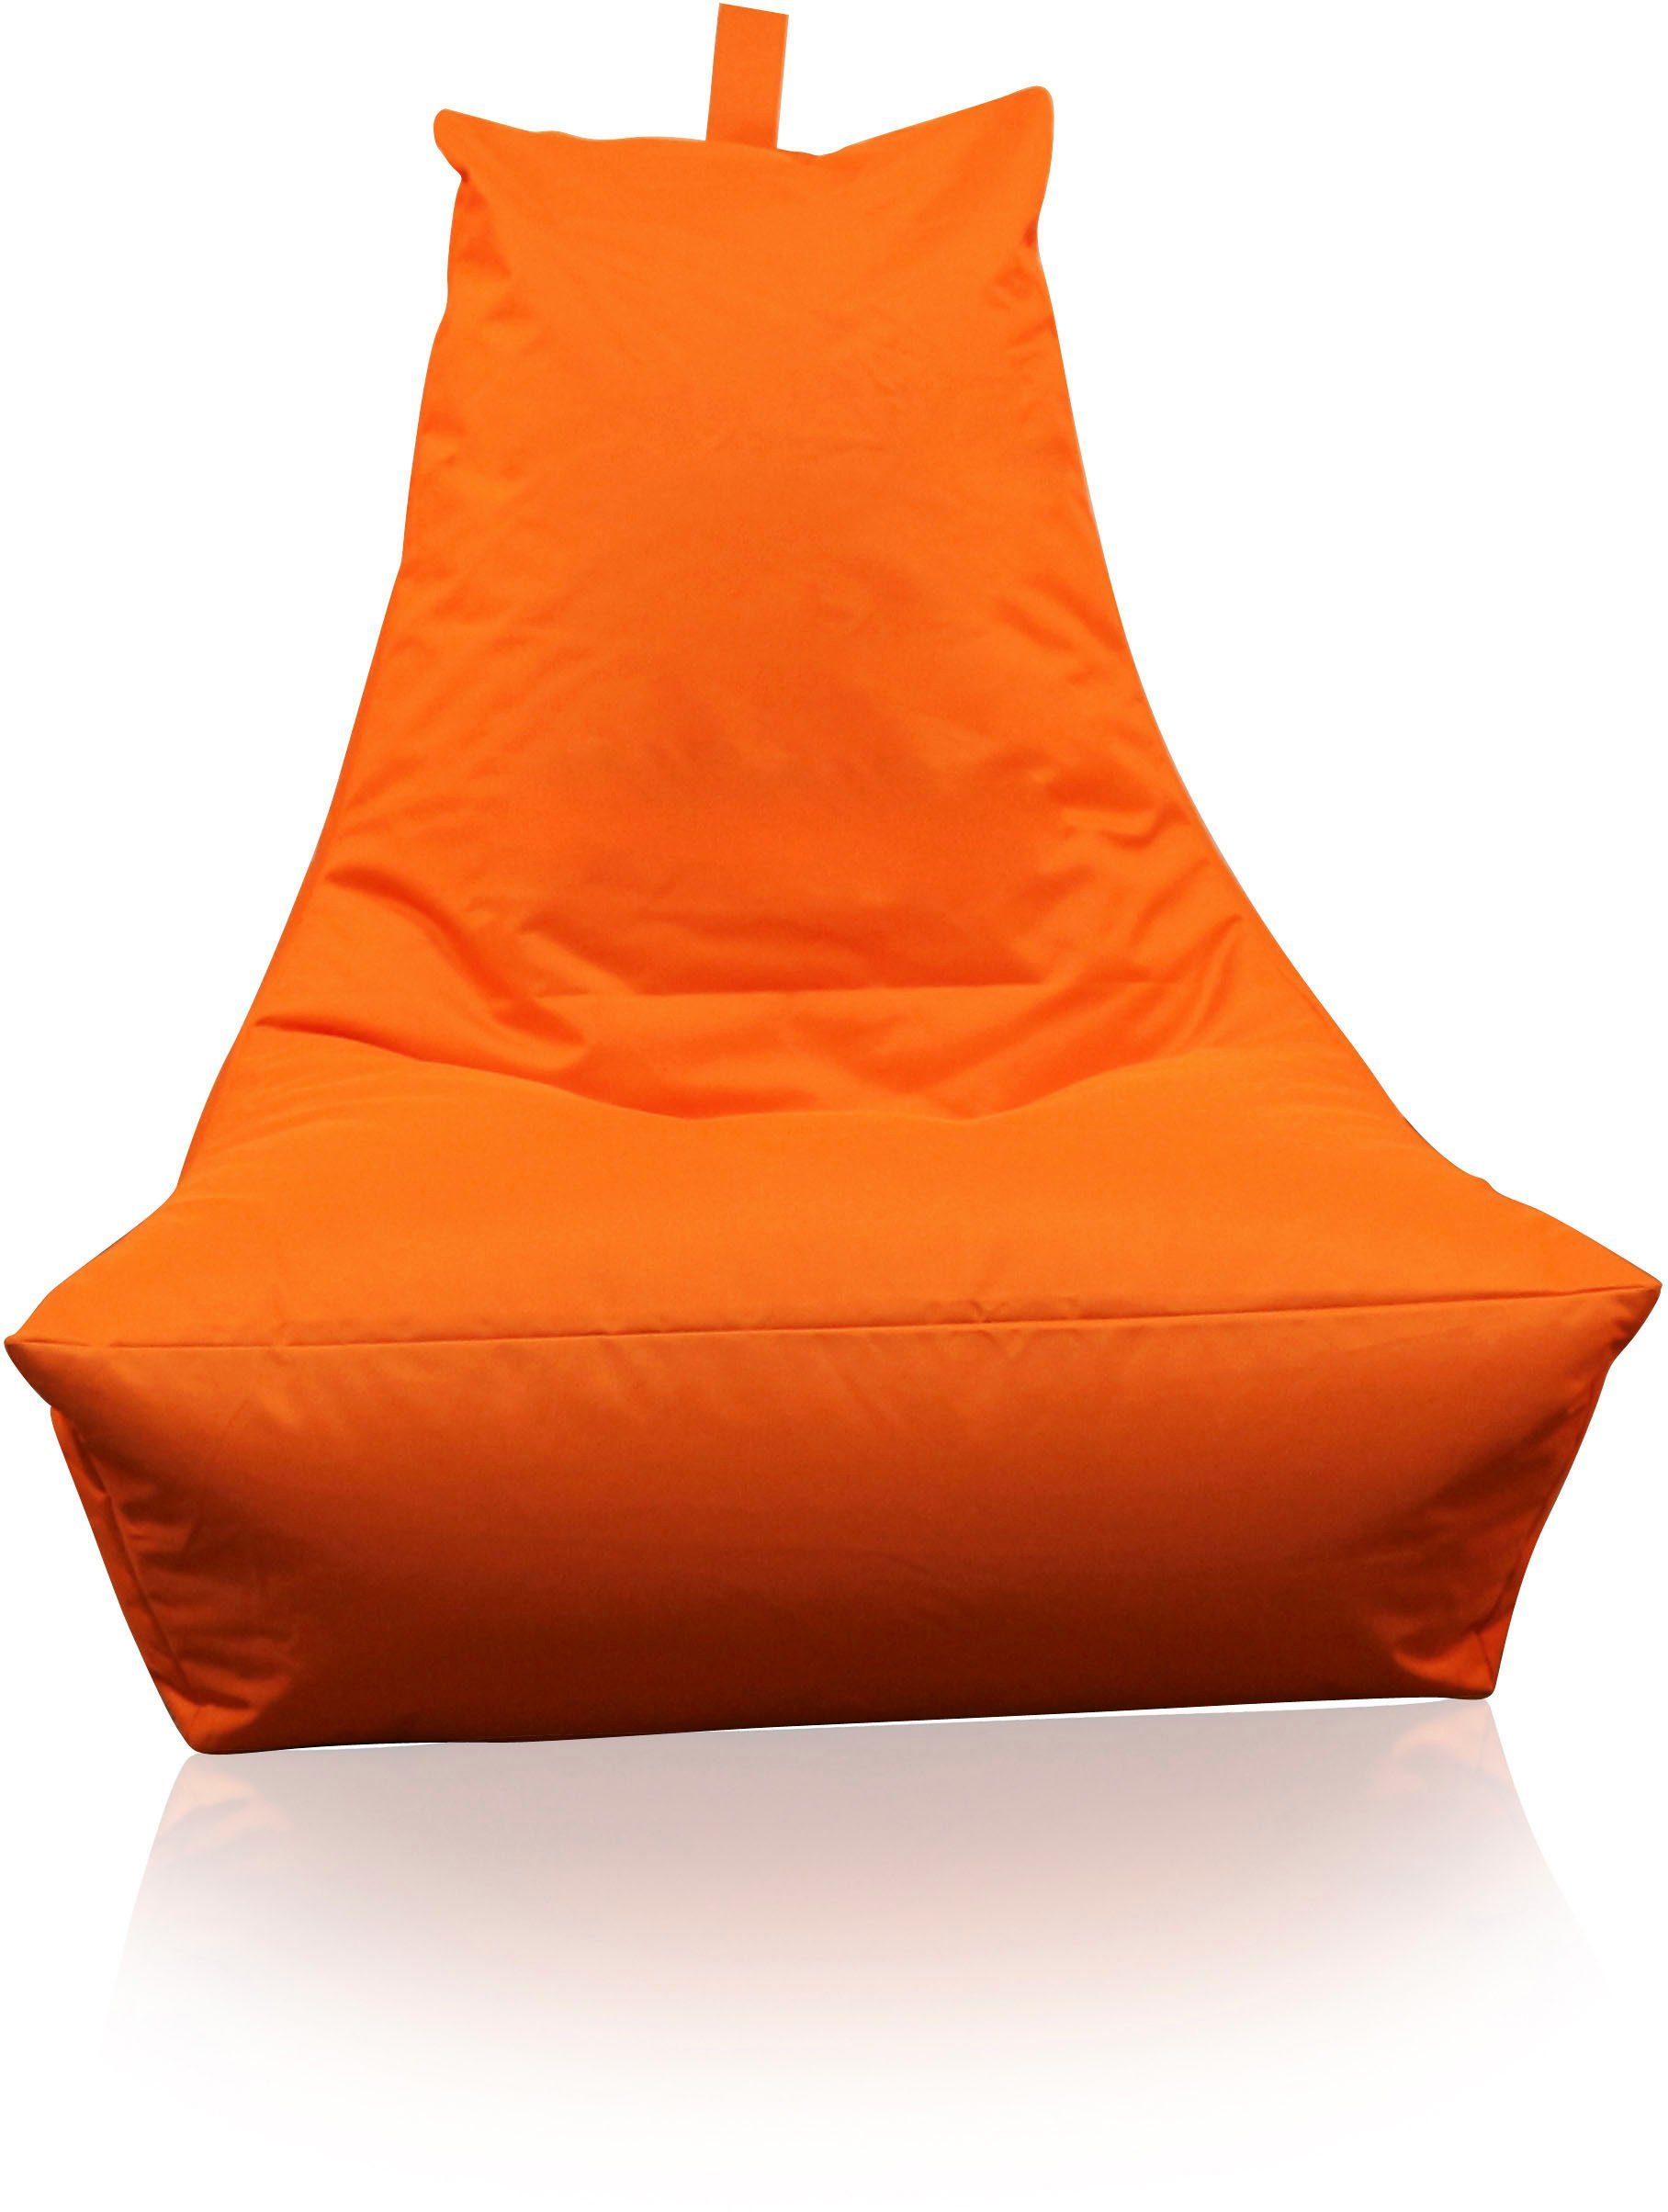 KiNZLER Sitzsack Lounge (1 St) orange